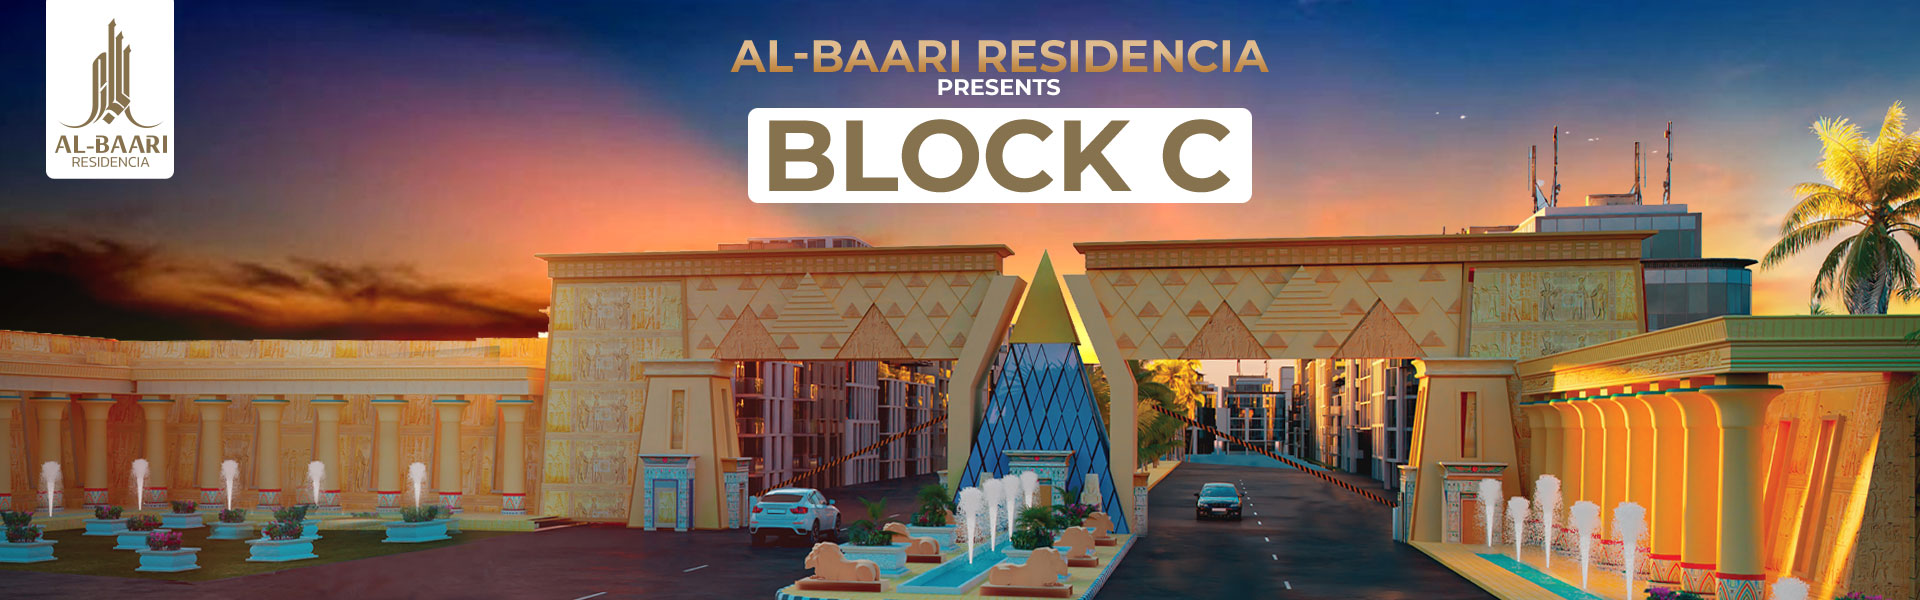 Al-Baari Residencia to Bring an Elite Lifestyle at Sheikhupura